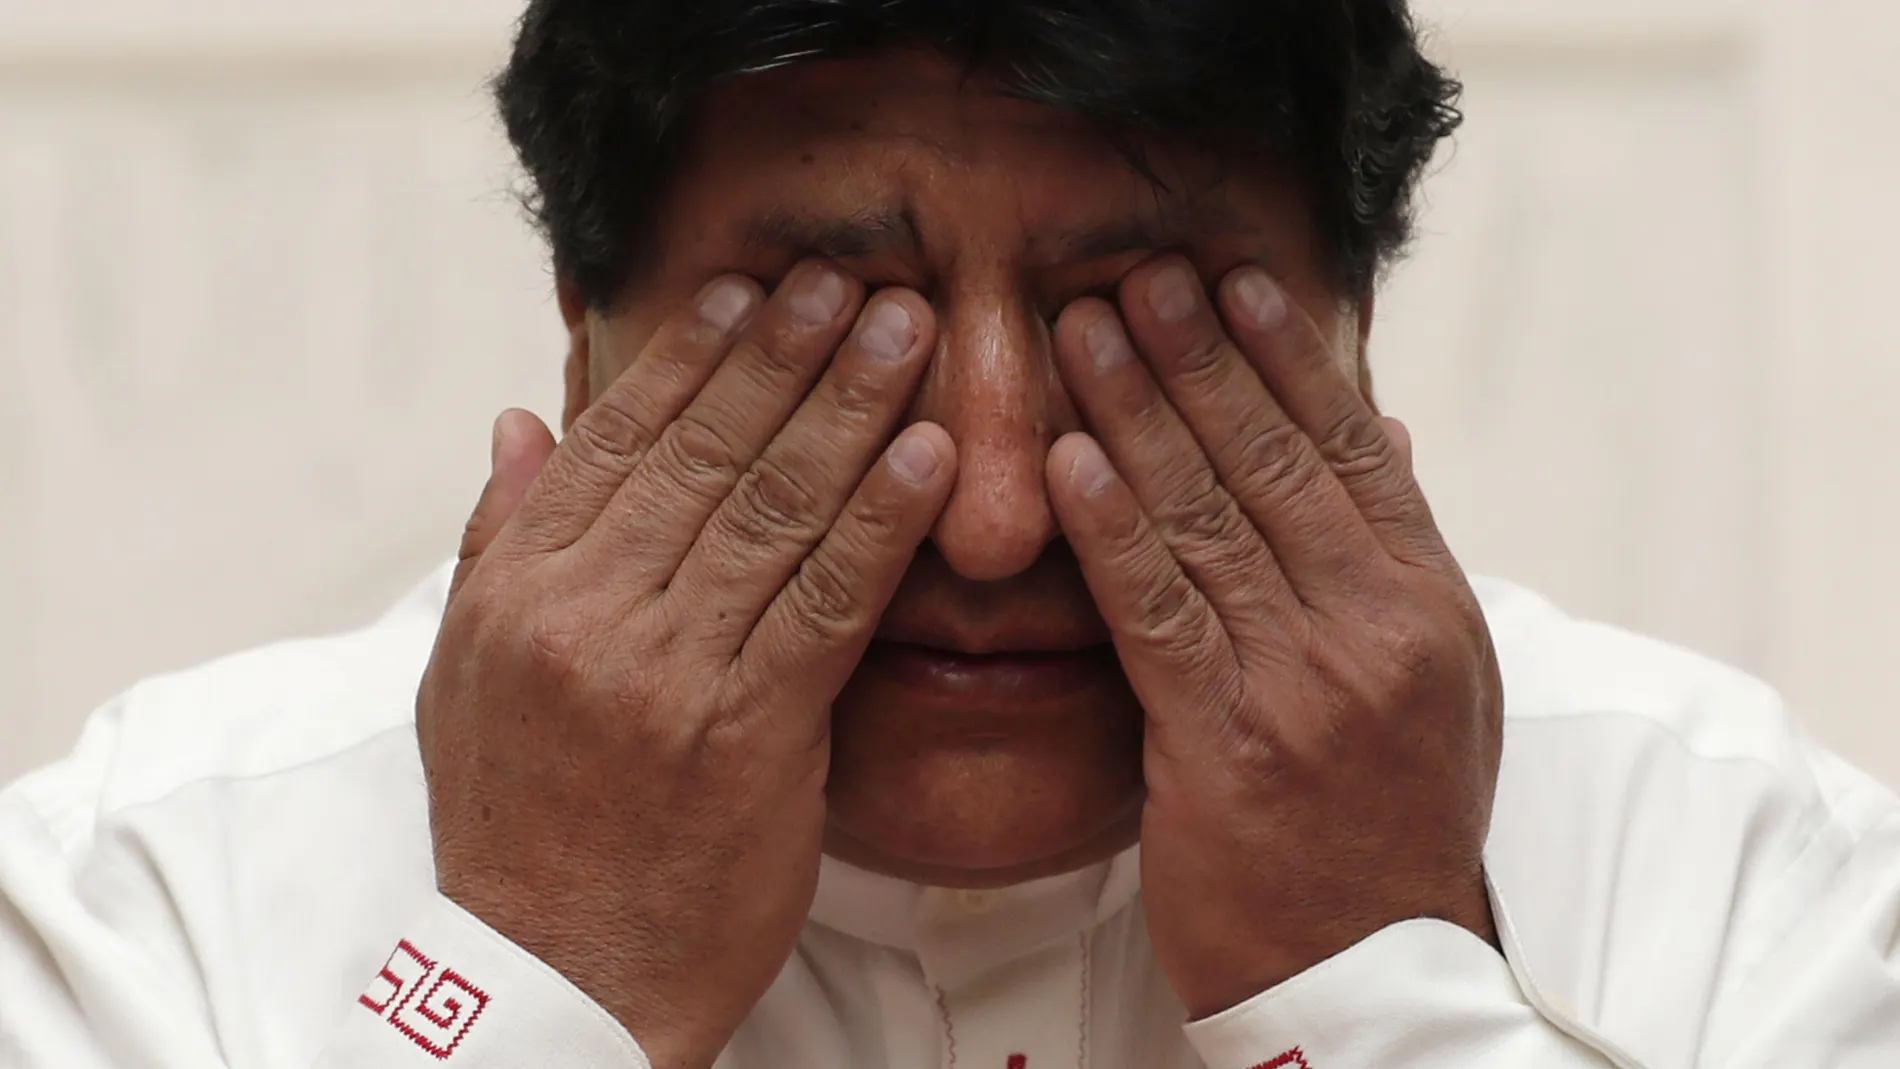 AME7142. UYUNI (BOLIVIA), 10/11/2020.- El expresidente de Bolivia Evo Morales reacciona durante una conferencia de prensa en Uyuni (Bolivia). El expresidente de Bolivia Evo Morales (2006-2019) aseguró este miércoles que los grandes yacimientos de litio que tiene su país fueron el motivo del "golpe de Estado" del que mantiene que fue víctima en la crisis política desatada tras las sospechas de fraude en las elecciones de 2019. EFE/Paolo Aguilar